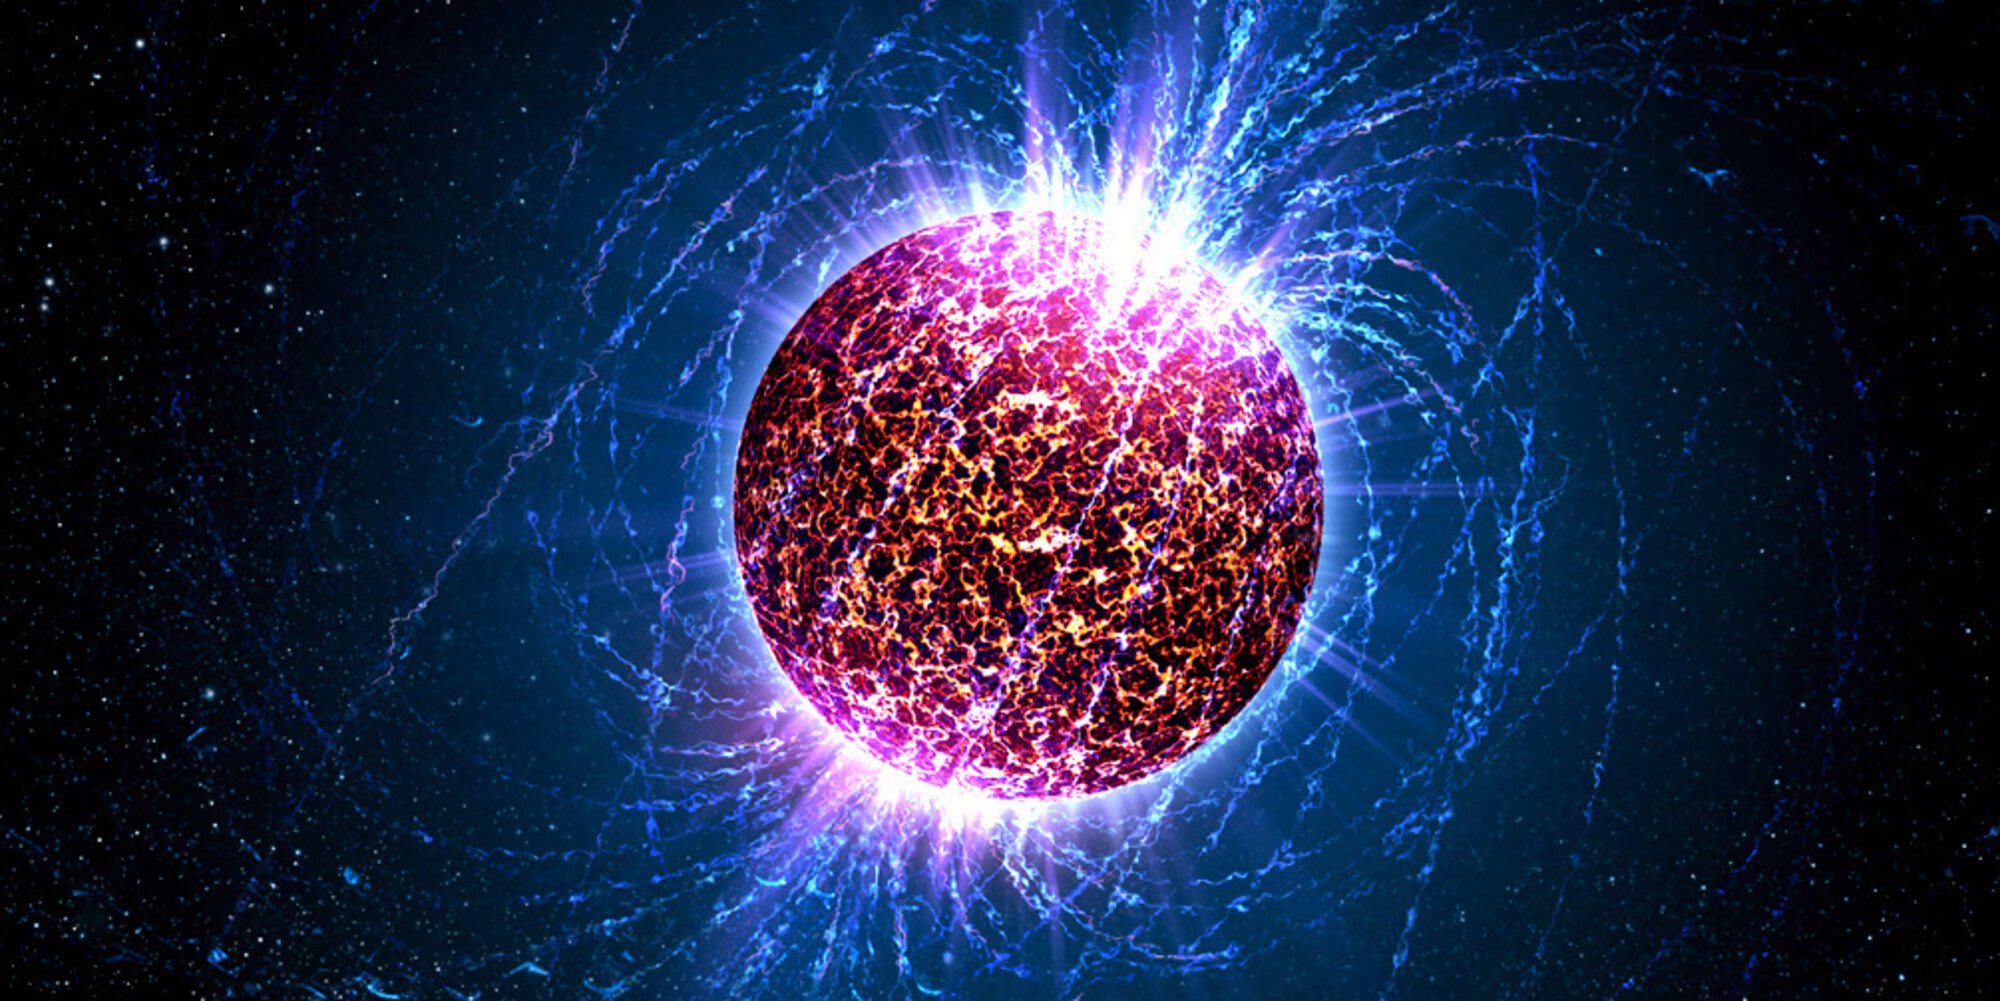 Découverte unique d'une étoile à neutrons